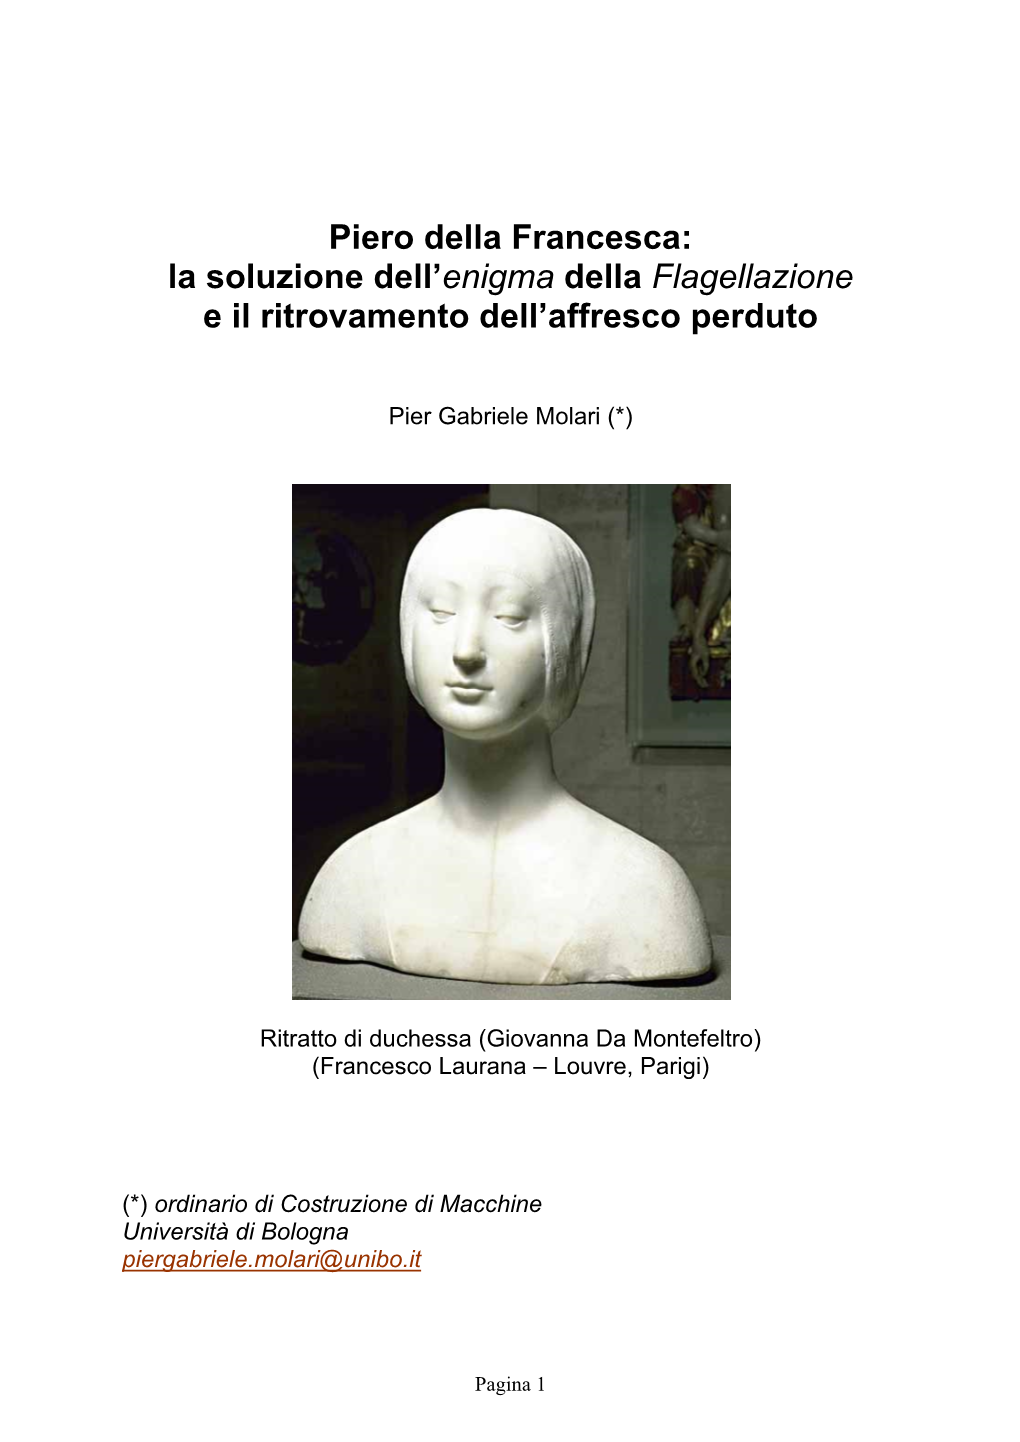 Piero Della Francesca: La Soluzione Dell’Enigma Della Flagellazione E Il Ritrovamento Dell’Affresco Perduto